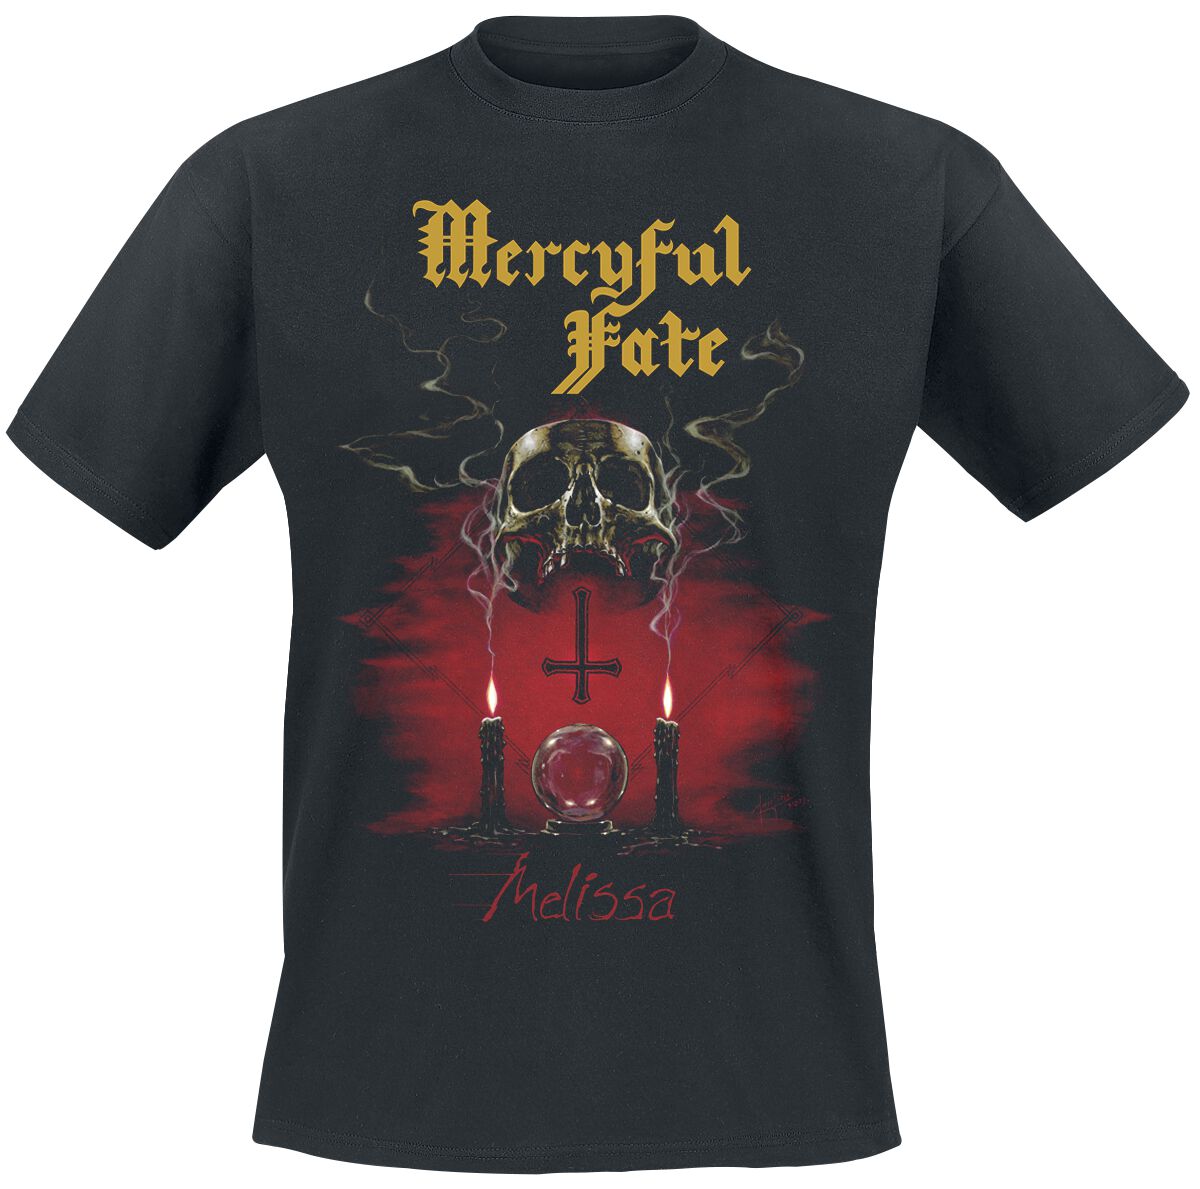 Mercyful Fate T-Shirt - Melissa (40th Anniversary) - M bis 3XL - für Männer - Größe XXL - schwarz  - Lizenziertes Merchandise!